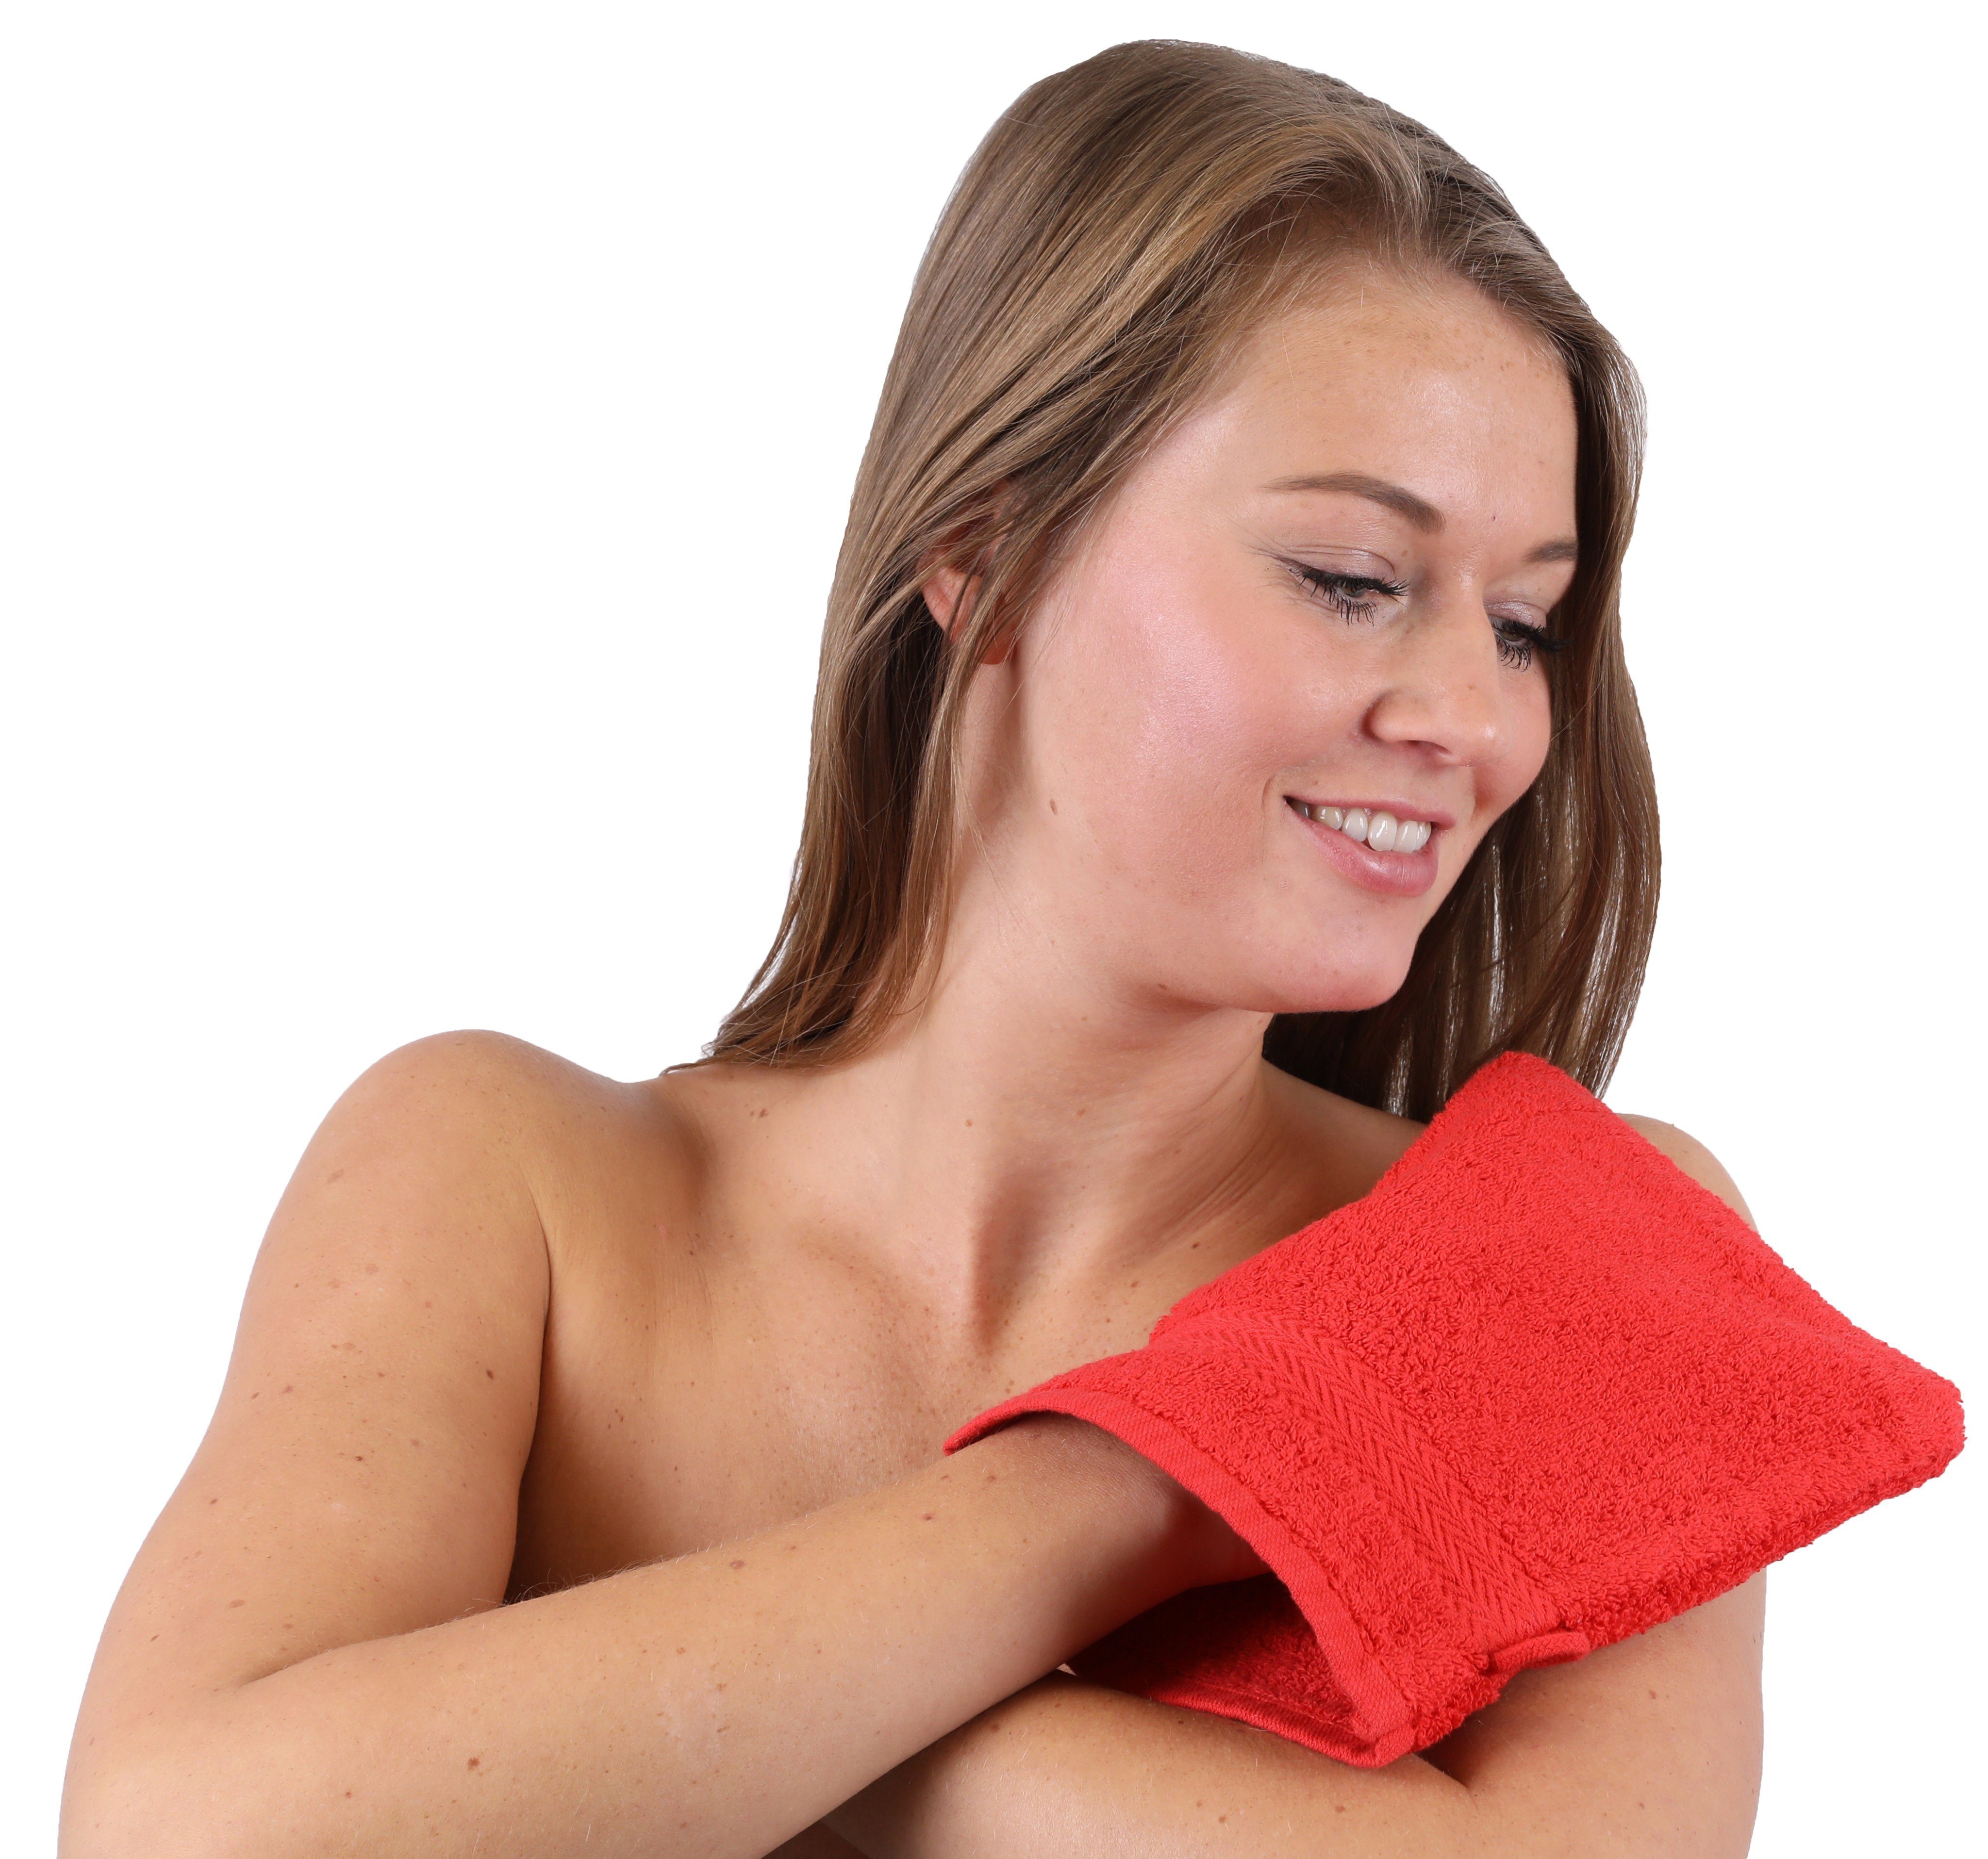 Betz Handtuch Set 10-TLG. Handtuch-Set Rot Dunkelbraun, Baumwolle, 100% Premium (10-tlg) Farbe &